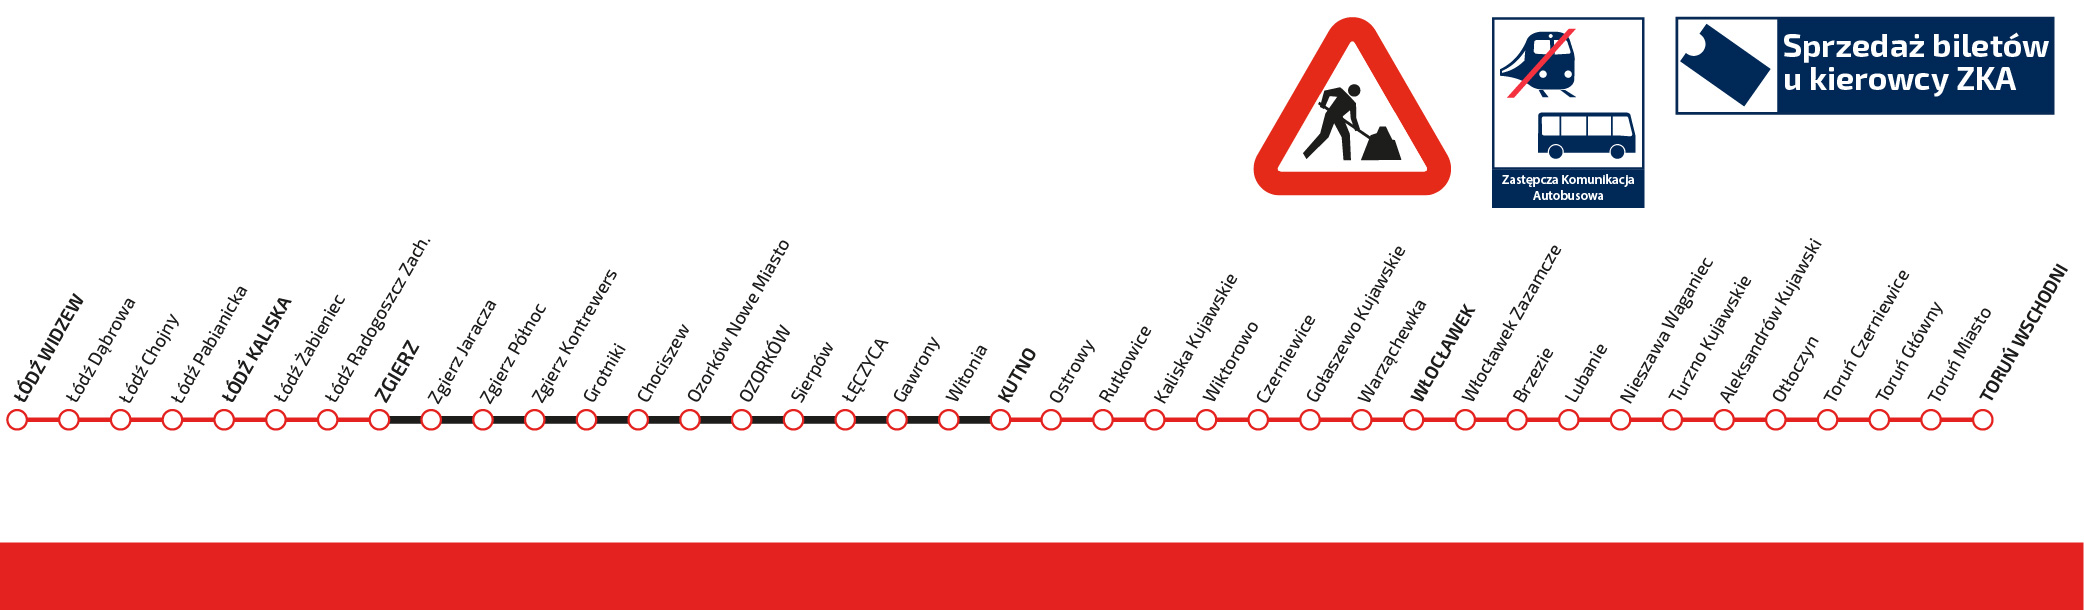 Schemat pokazujący trasę Łódź Widzew-Kutno-Włocławek-Toruń